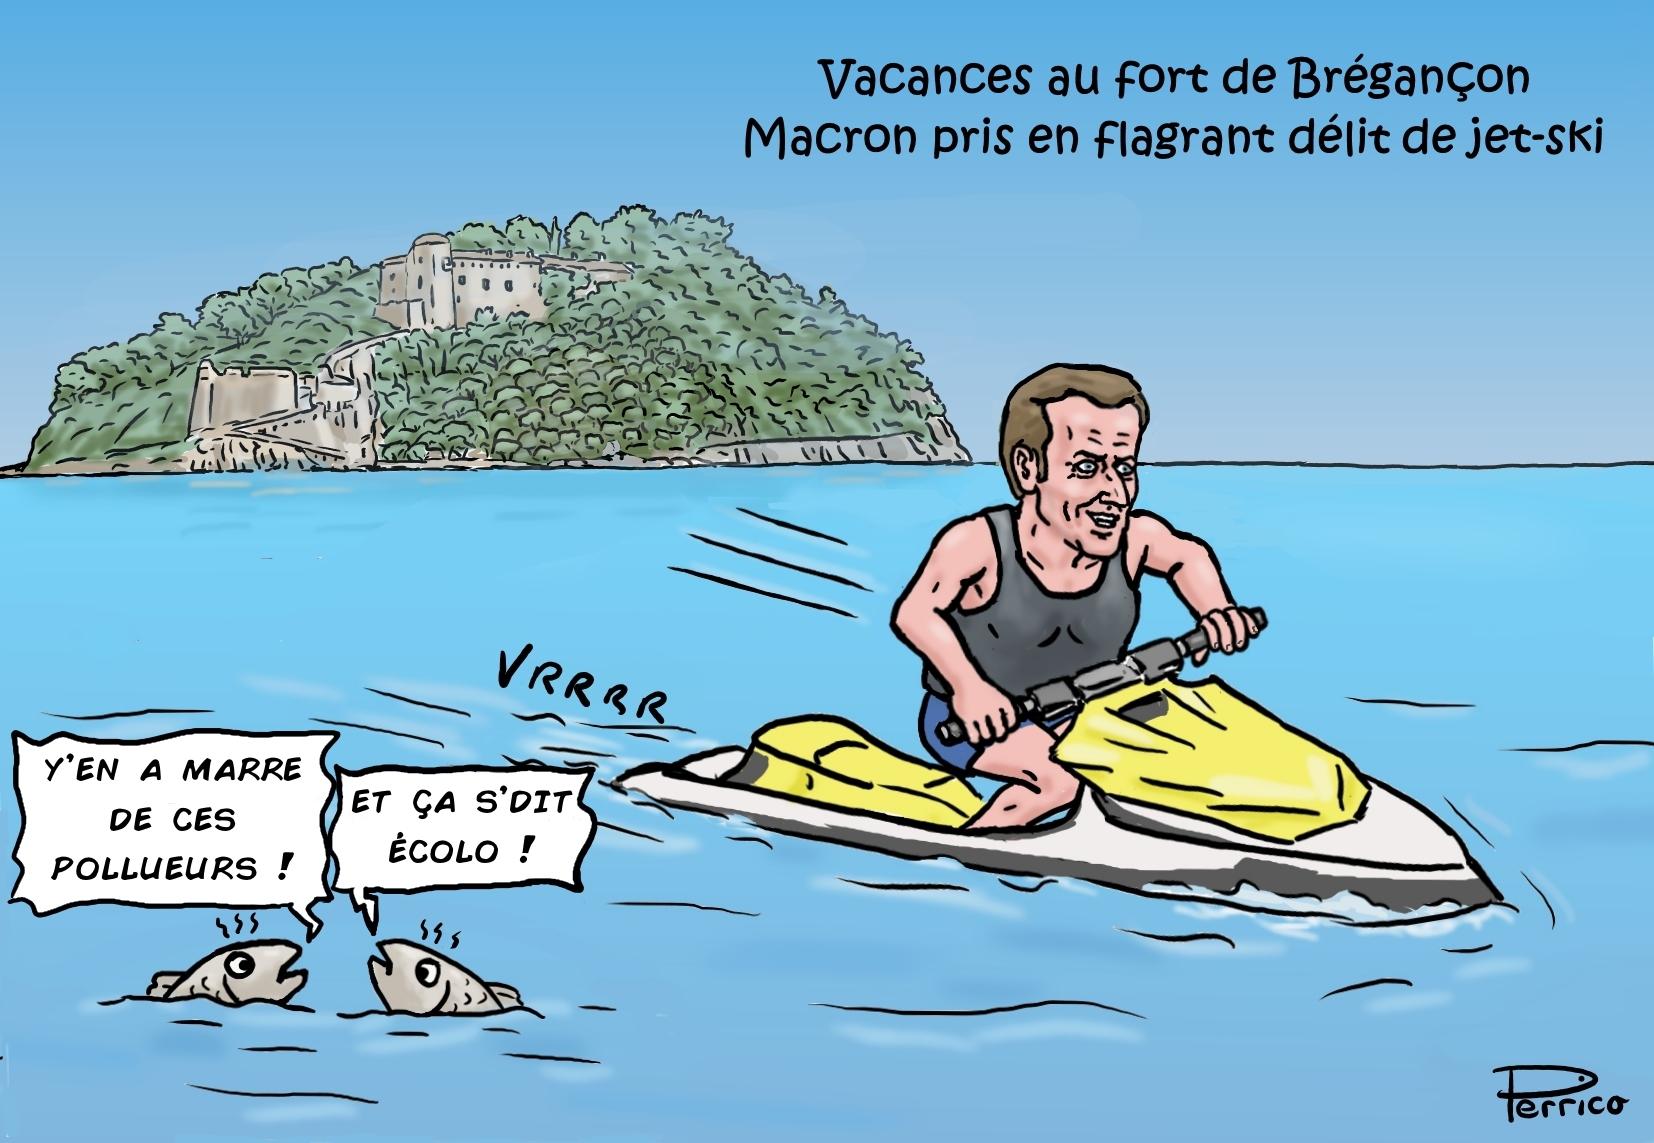 Macron en jet-ski